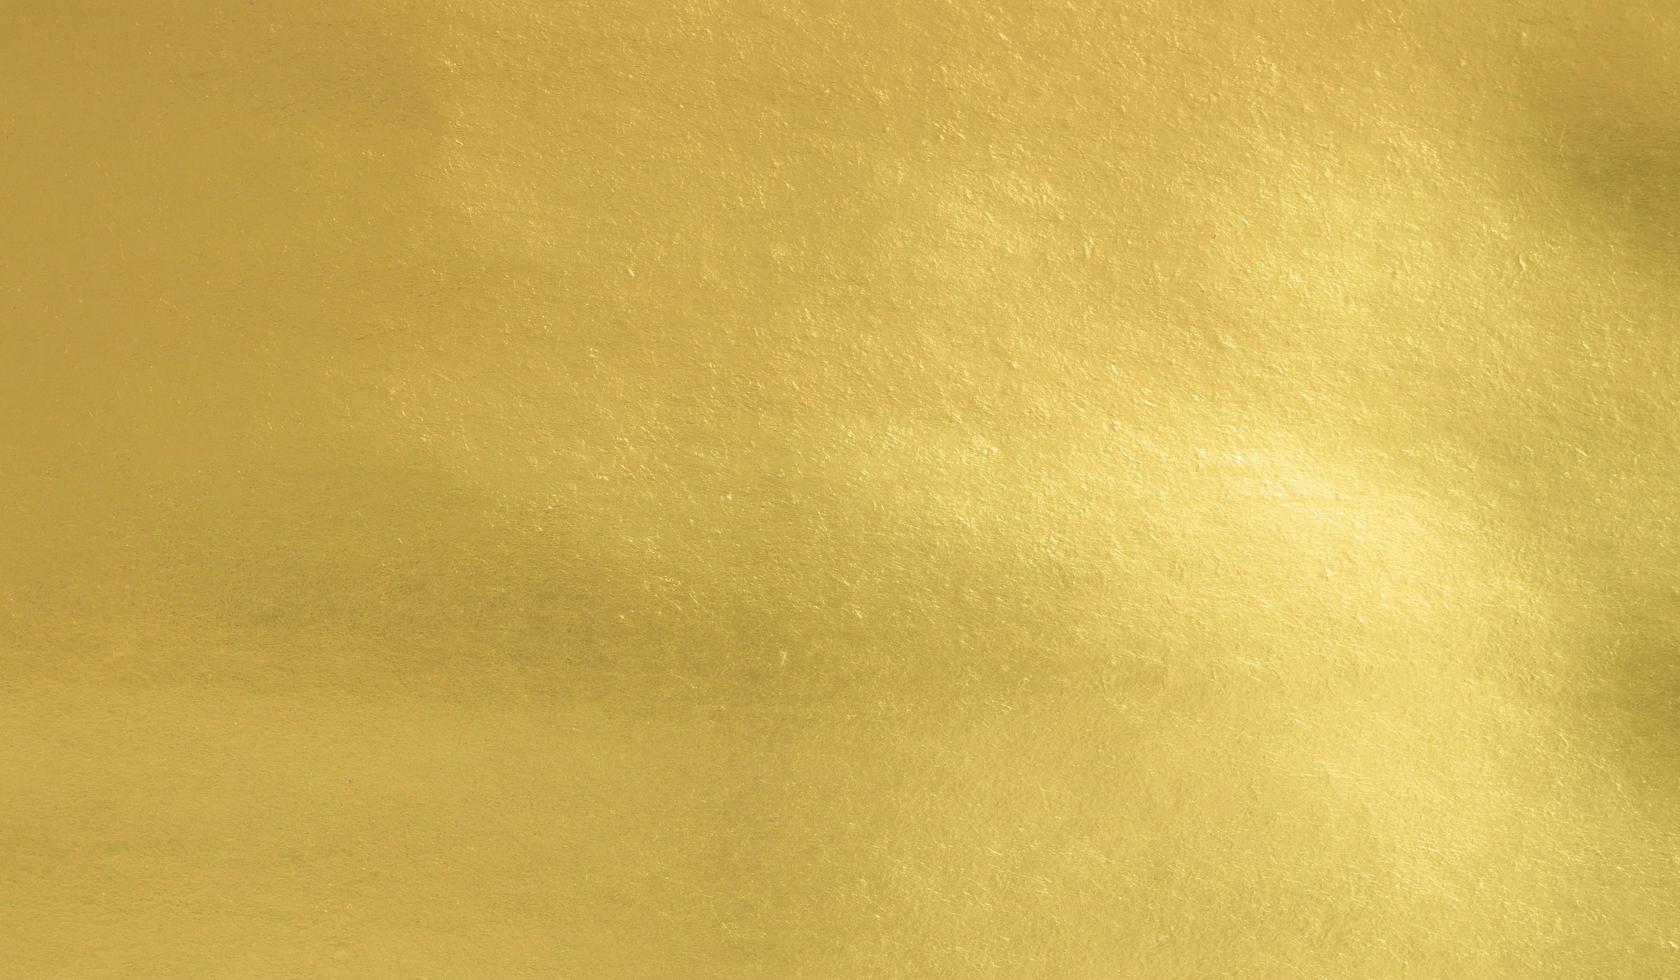 fundo de textura de papel de folha de ouro, folha de luxo brilhante horizontal com design exclusivo de papel, estilo natural suave para design criativo estético foto